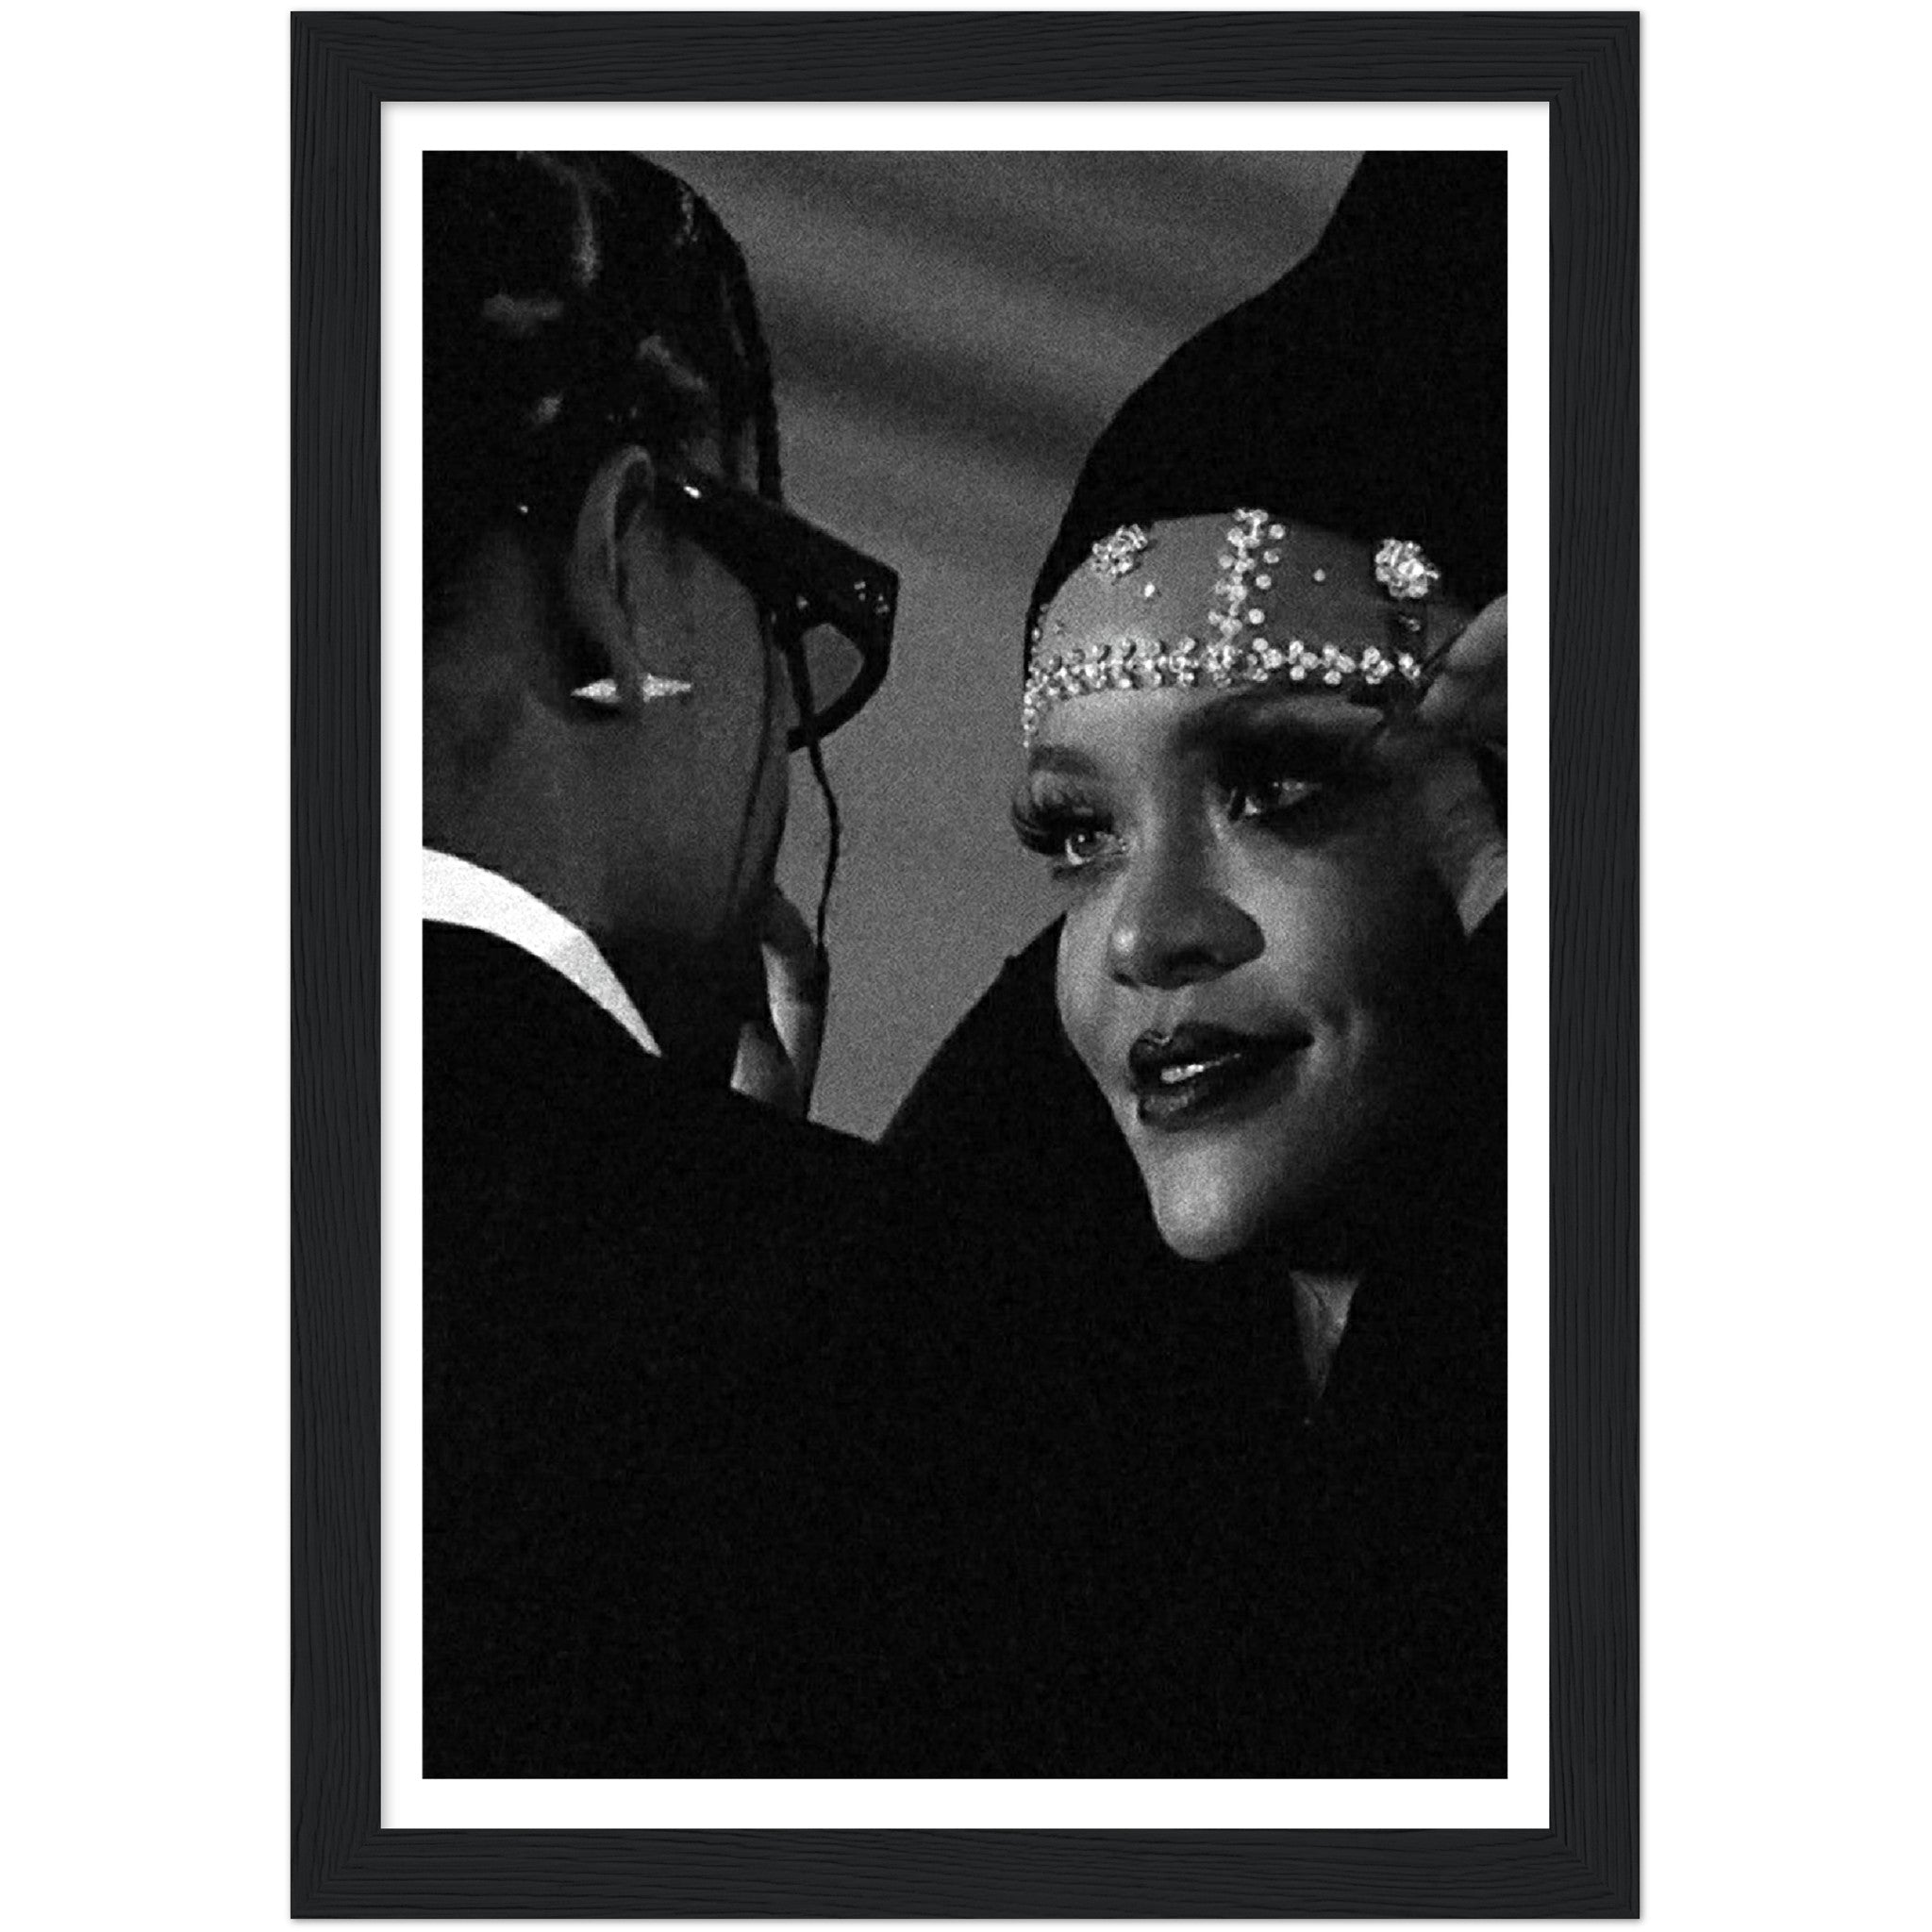 Rihanna x A$AP Rocky